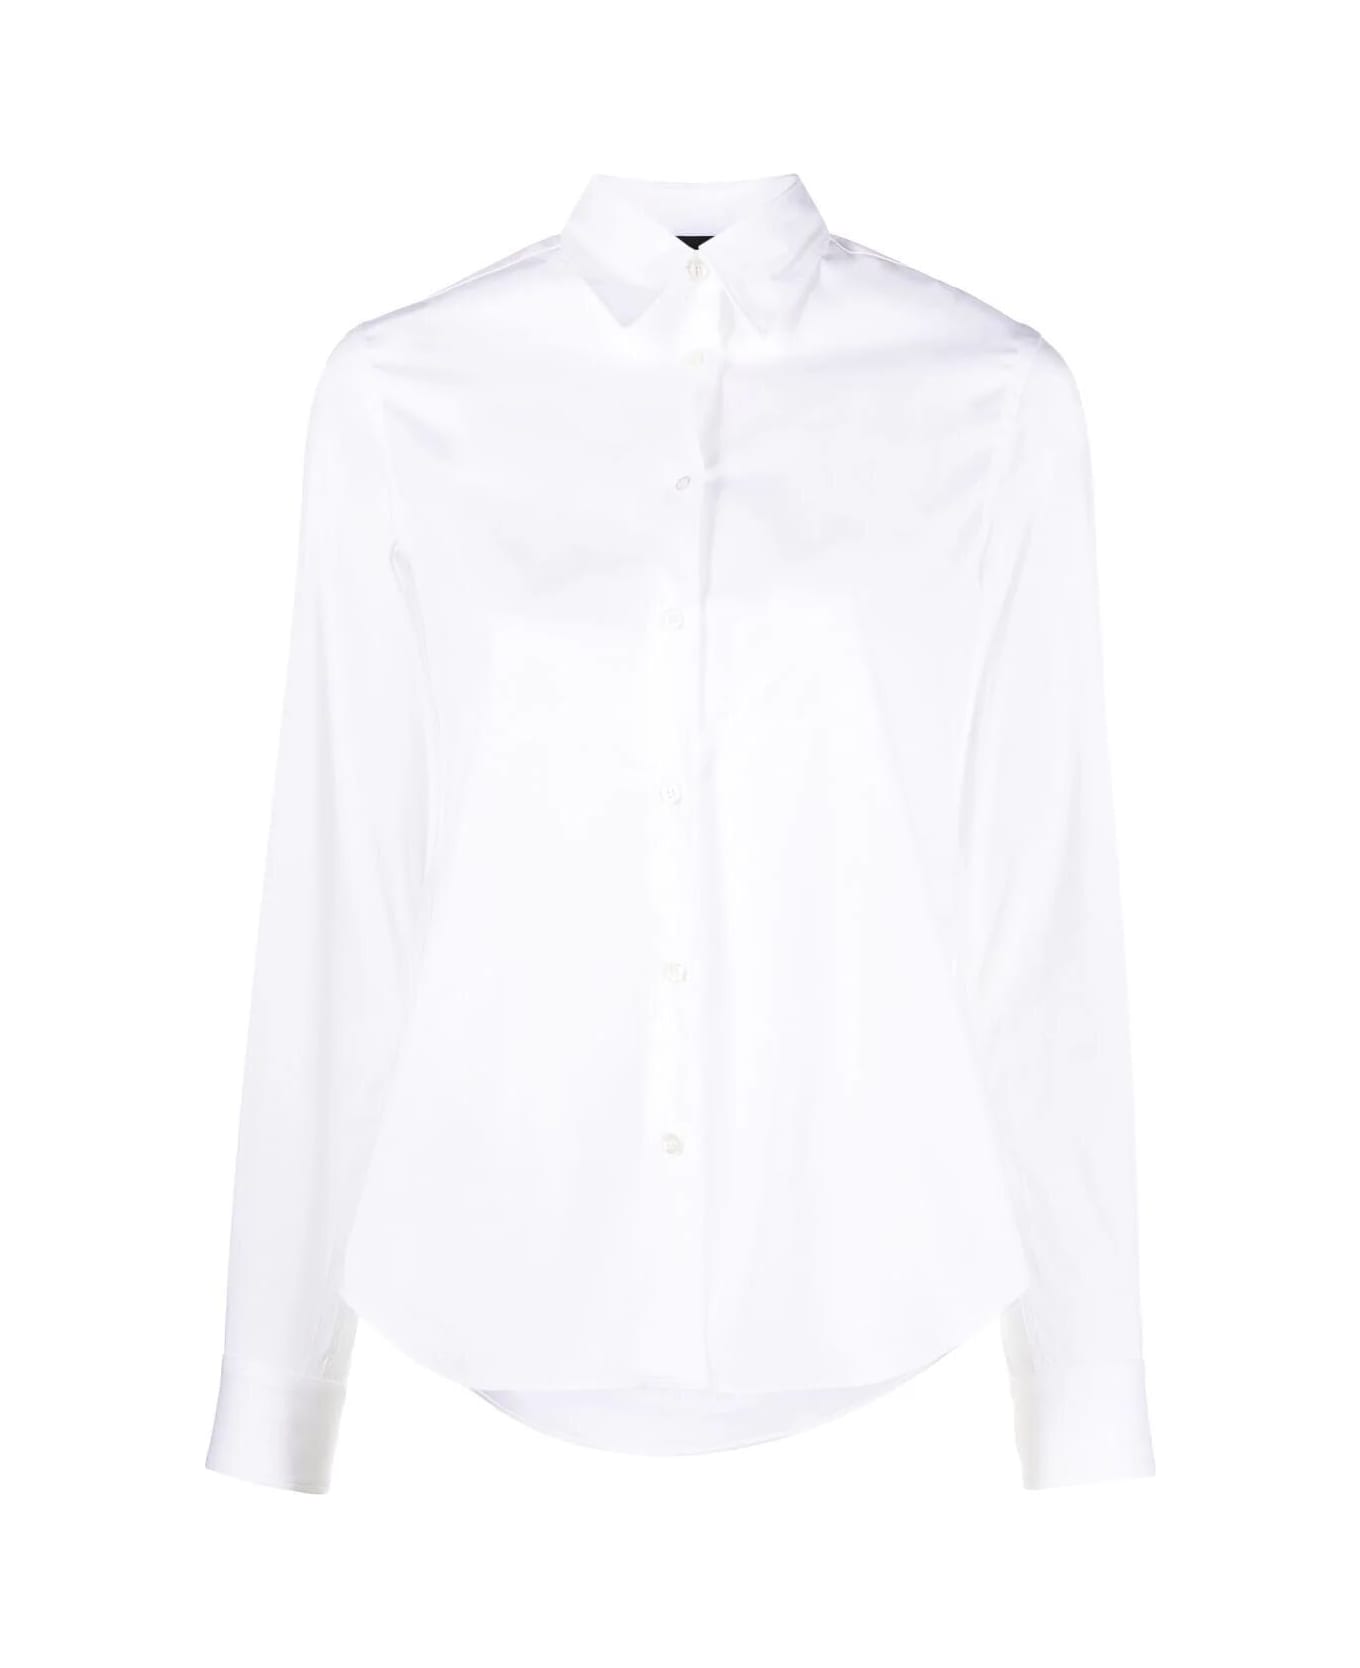 Aspesi Mod 5422 Shirt - White シャツ